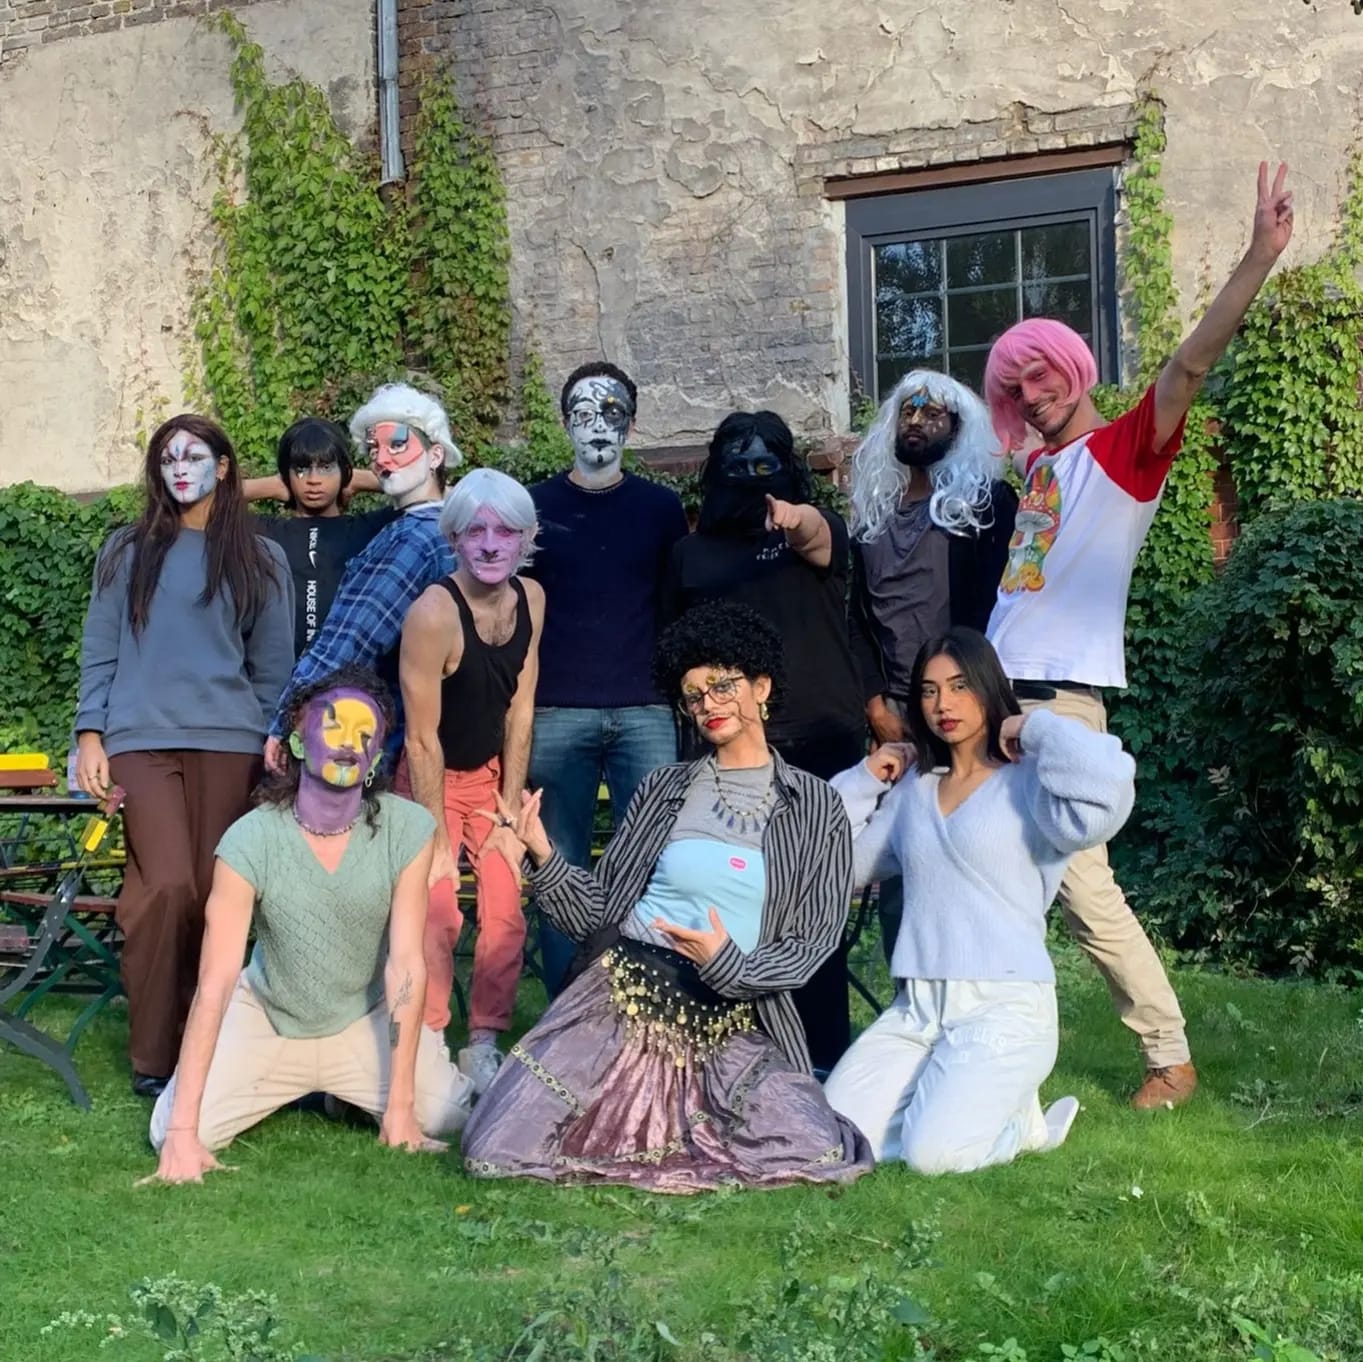 Eine Gruppe Teilnehmender der Queer*Yourope Berlinfahrt 2022 posen in Drag geschminkt und gekleidet als ihre bunten Drag-Personas vor einer Hauswand im Gras